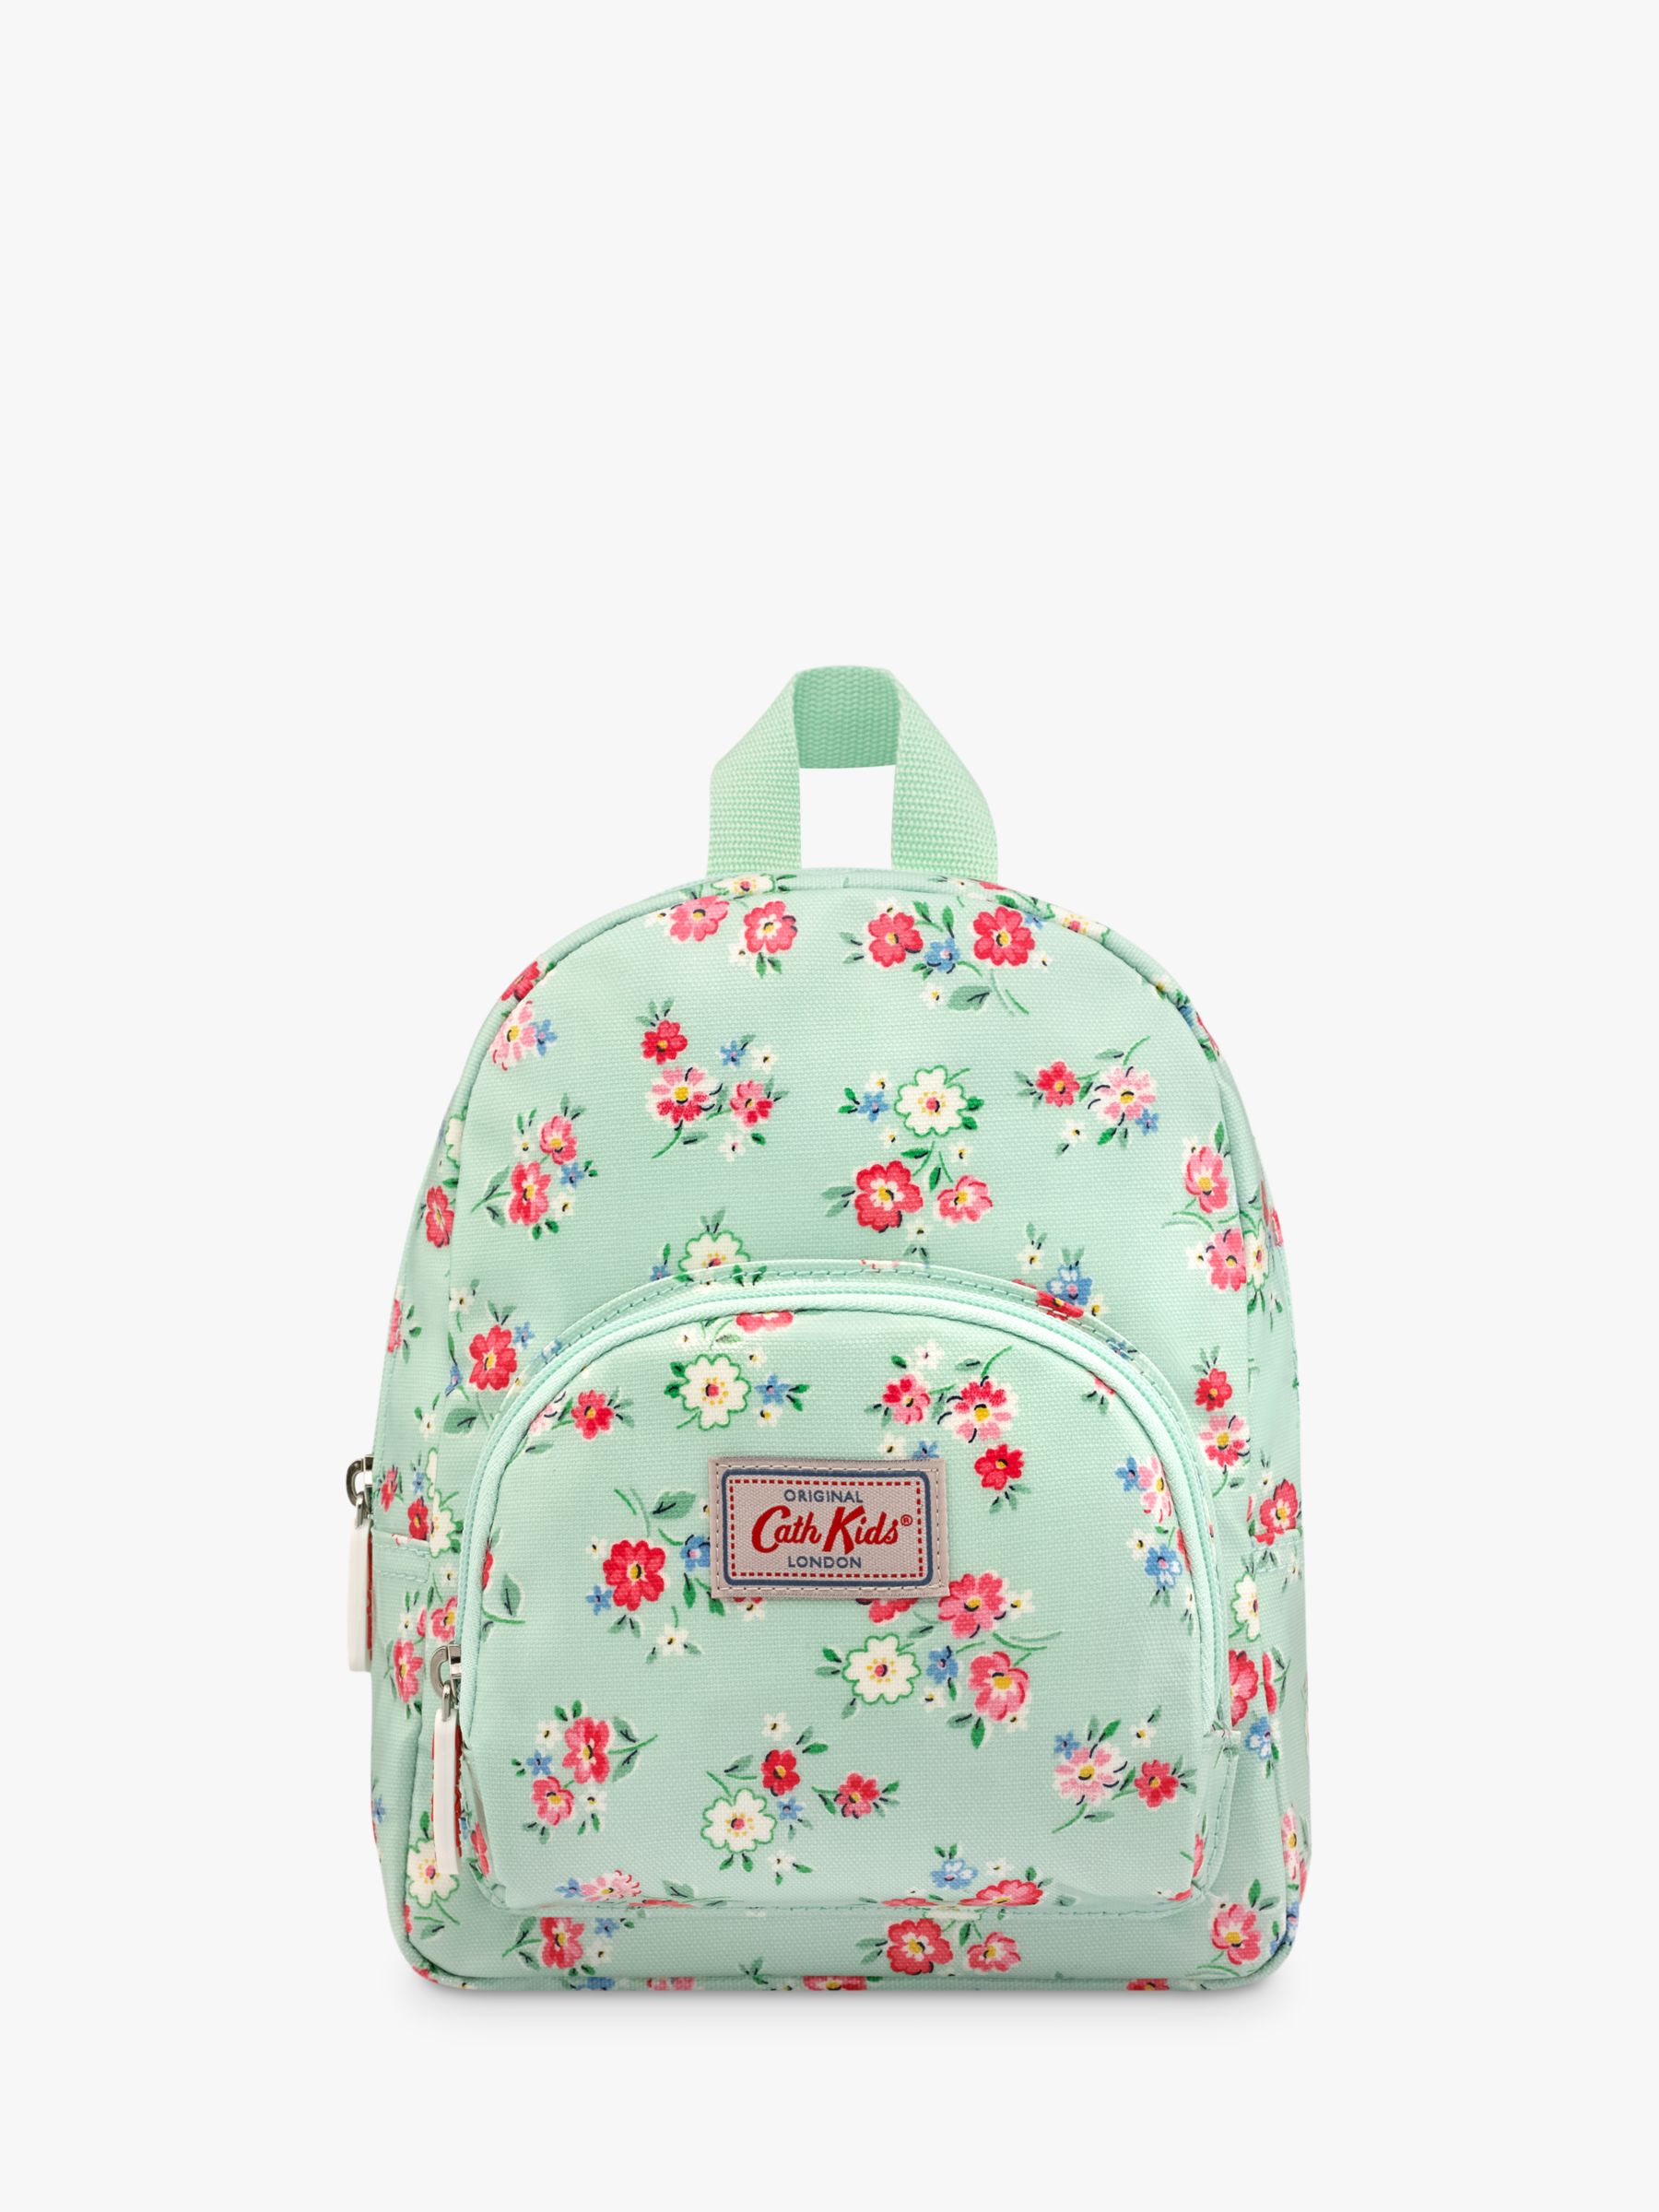 cath kidston girls backpack